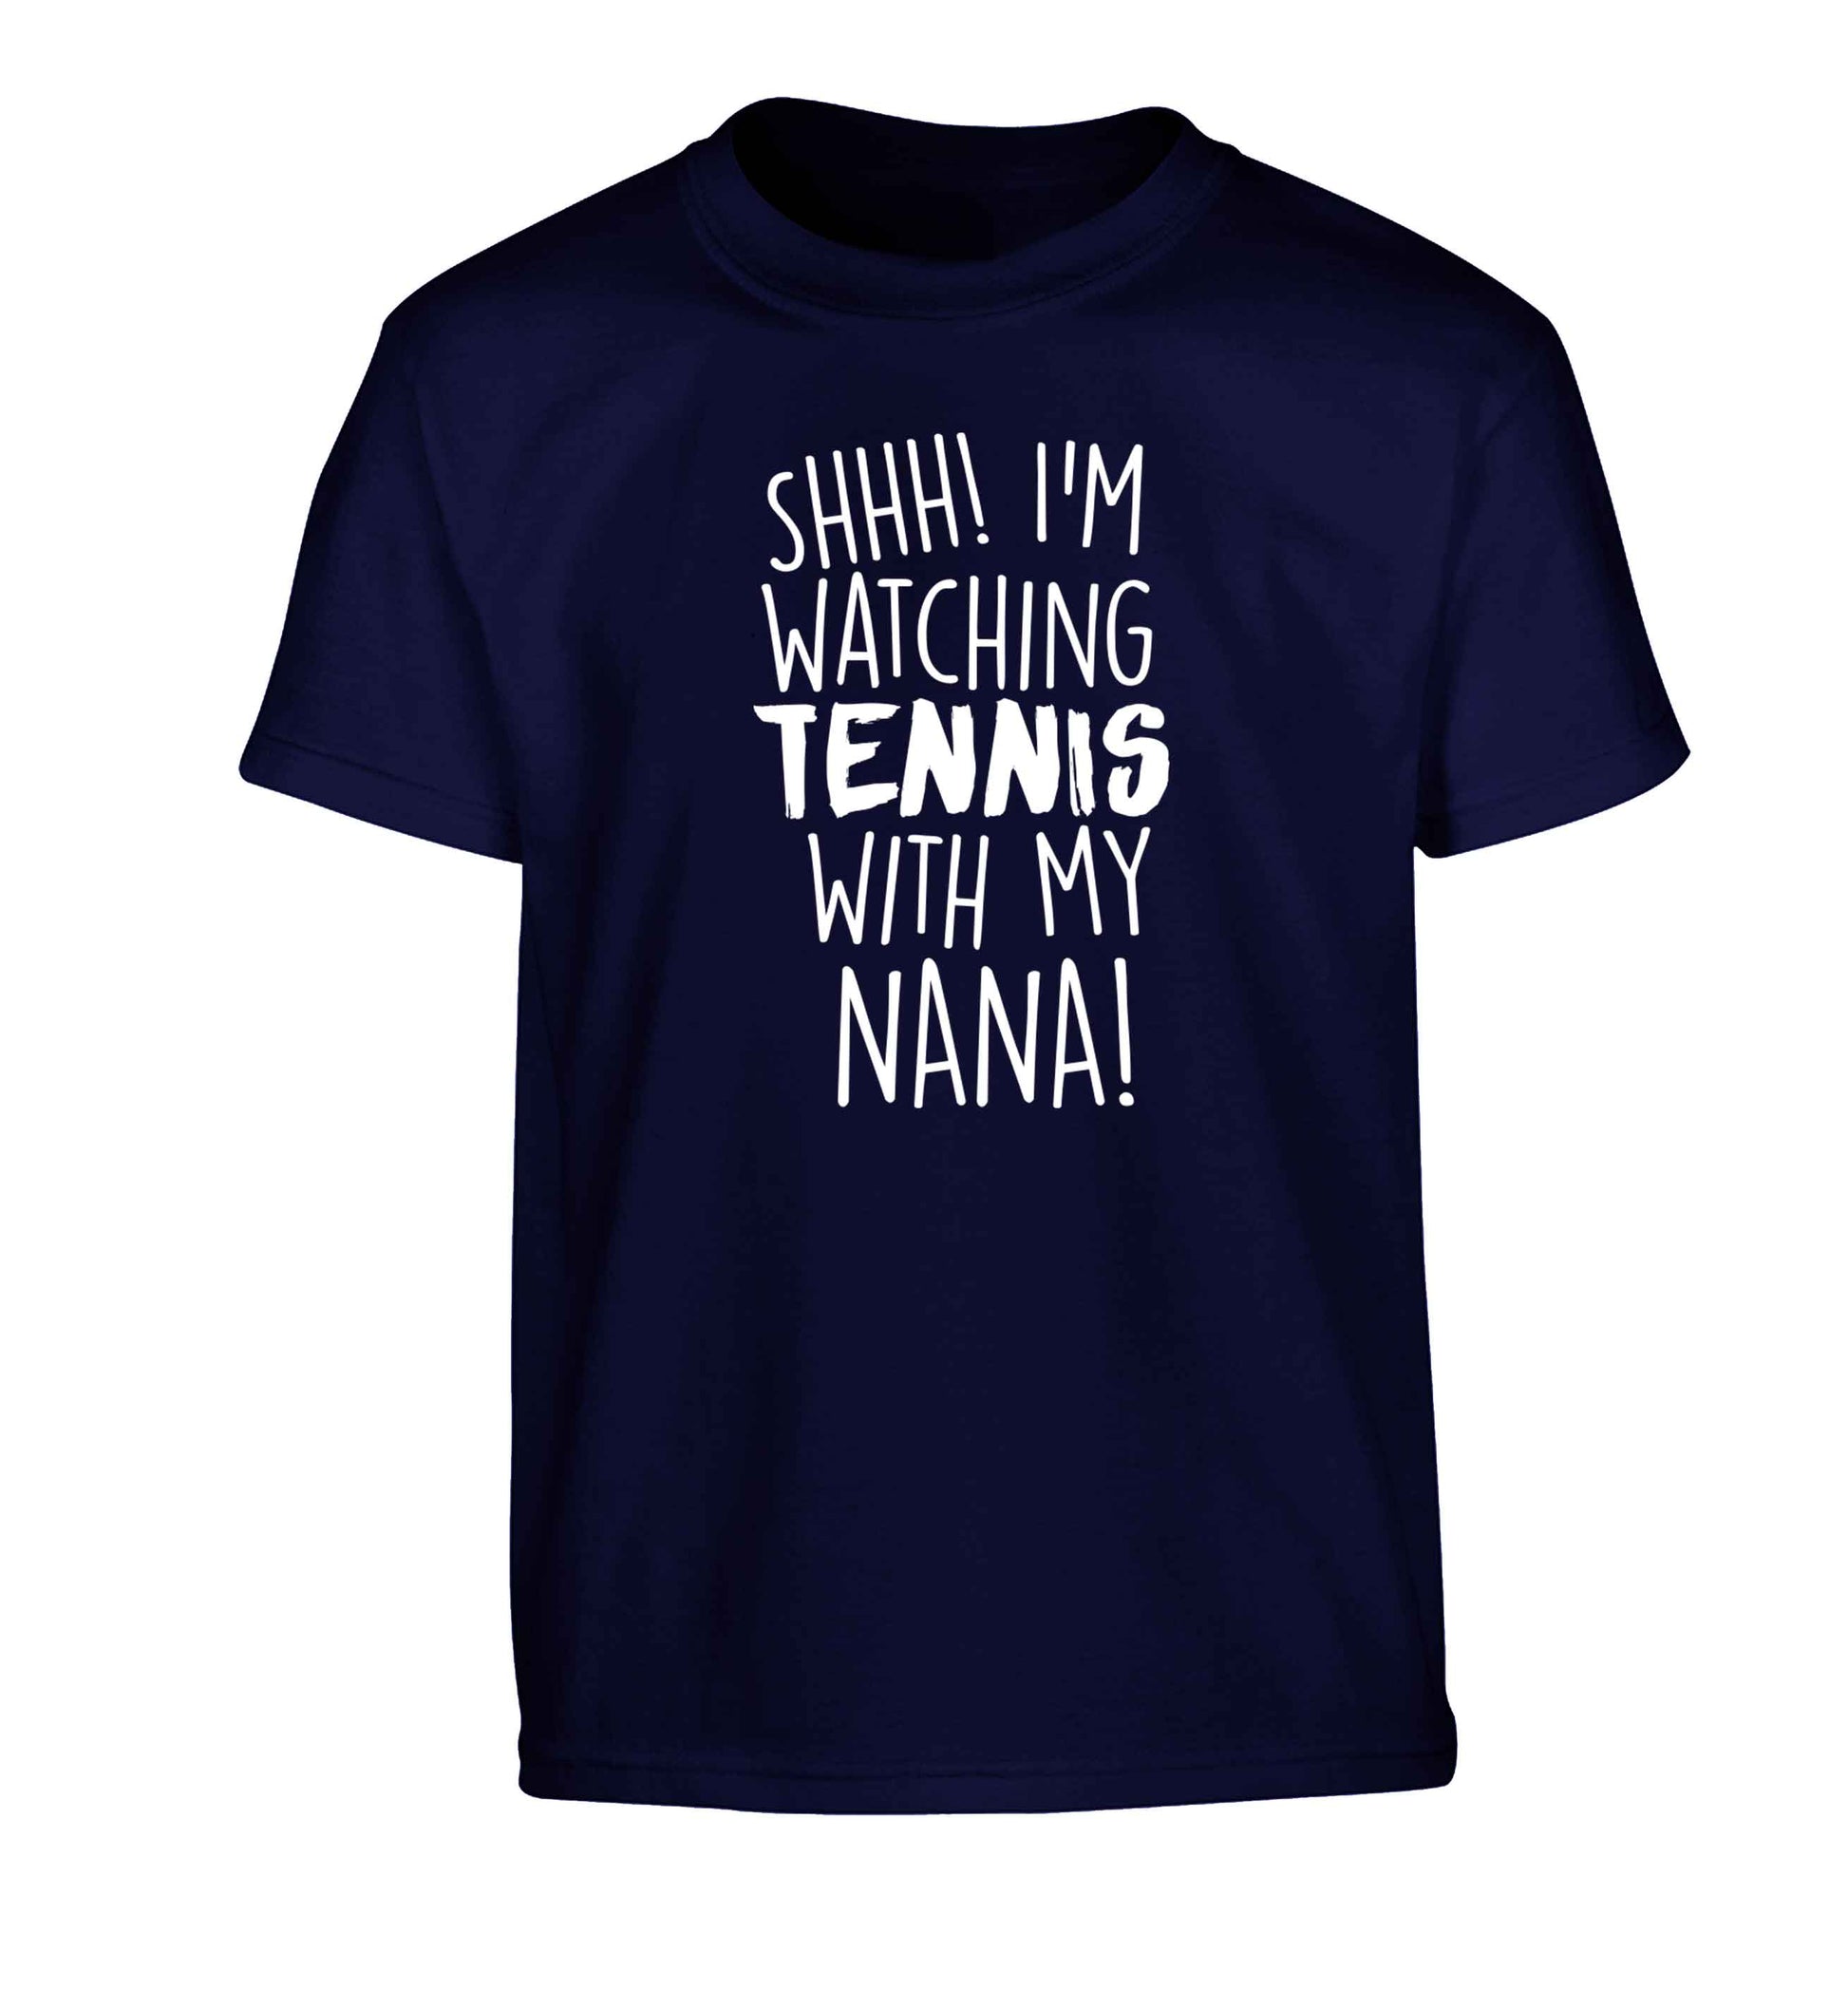 Shh! I'm watching tennis with my nana! Children's navy Tshirt 12-13 Years